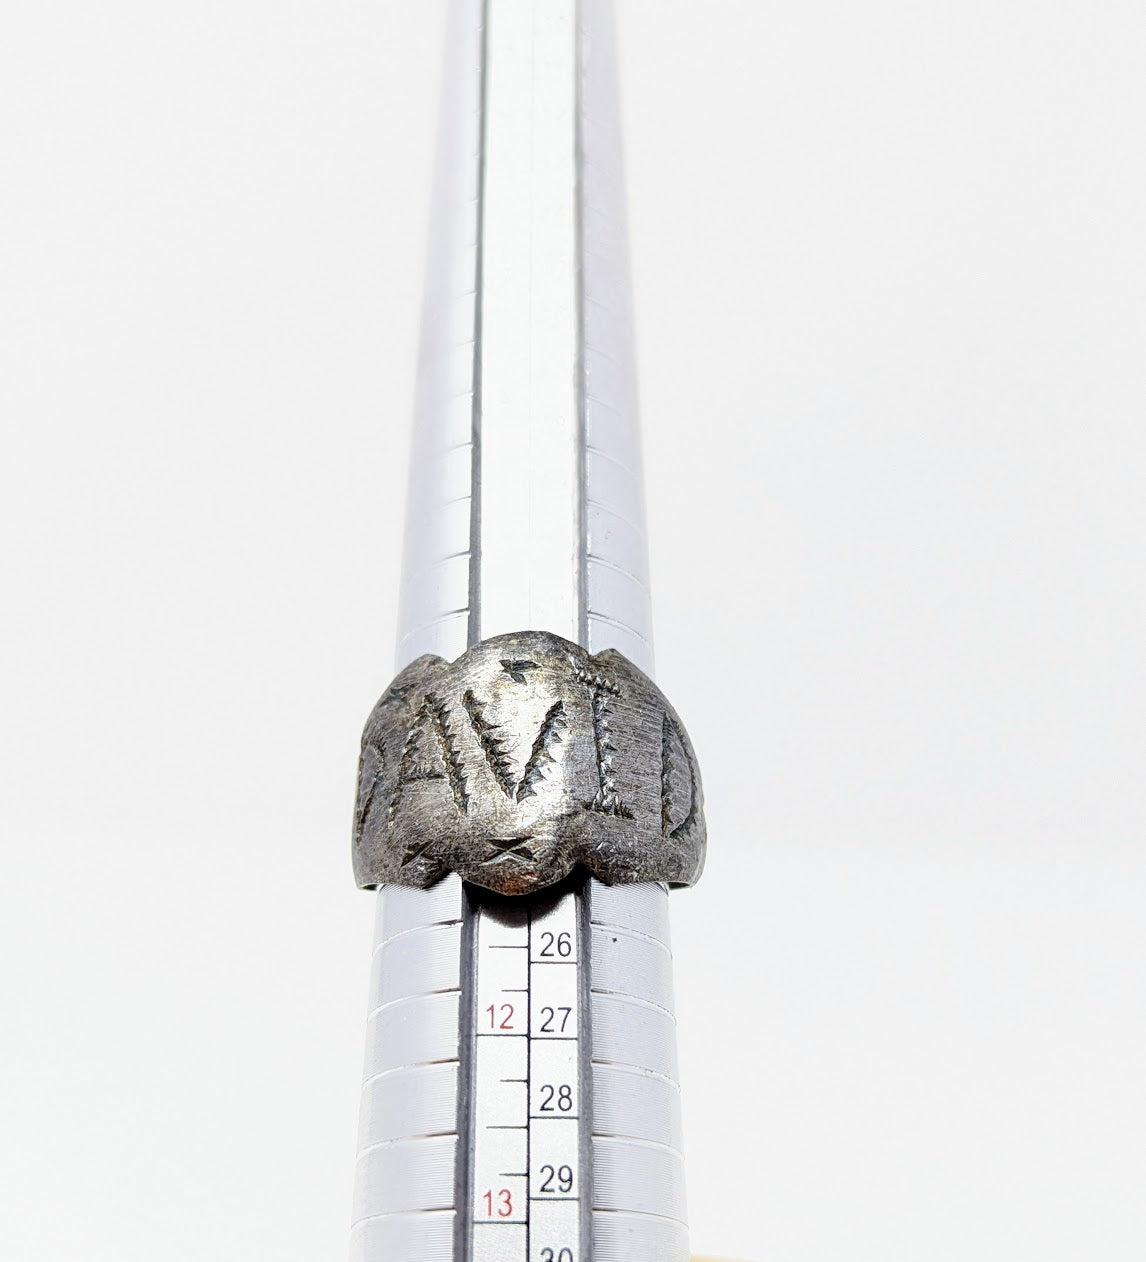 Antique Roman Silver Legionary Ring | "DAVID" Inscribed on Bezel